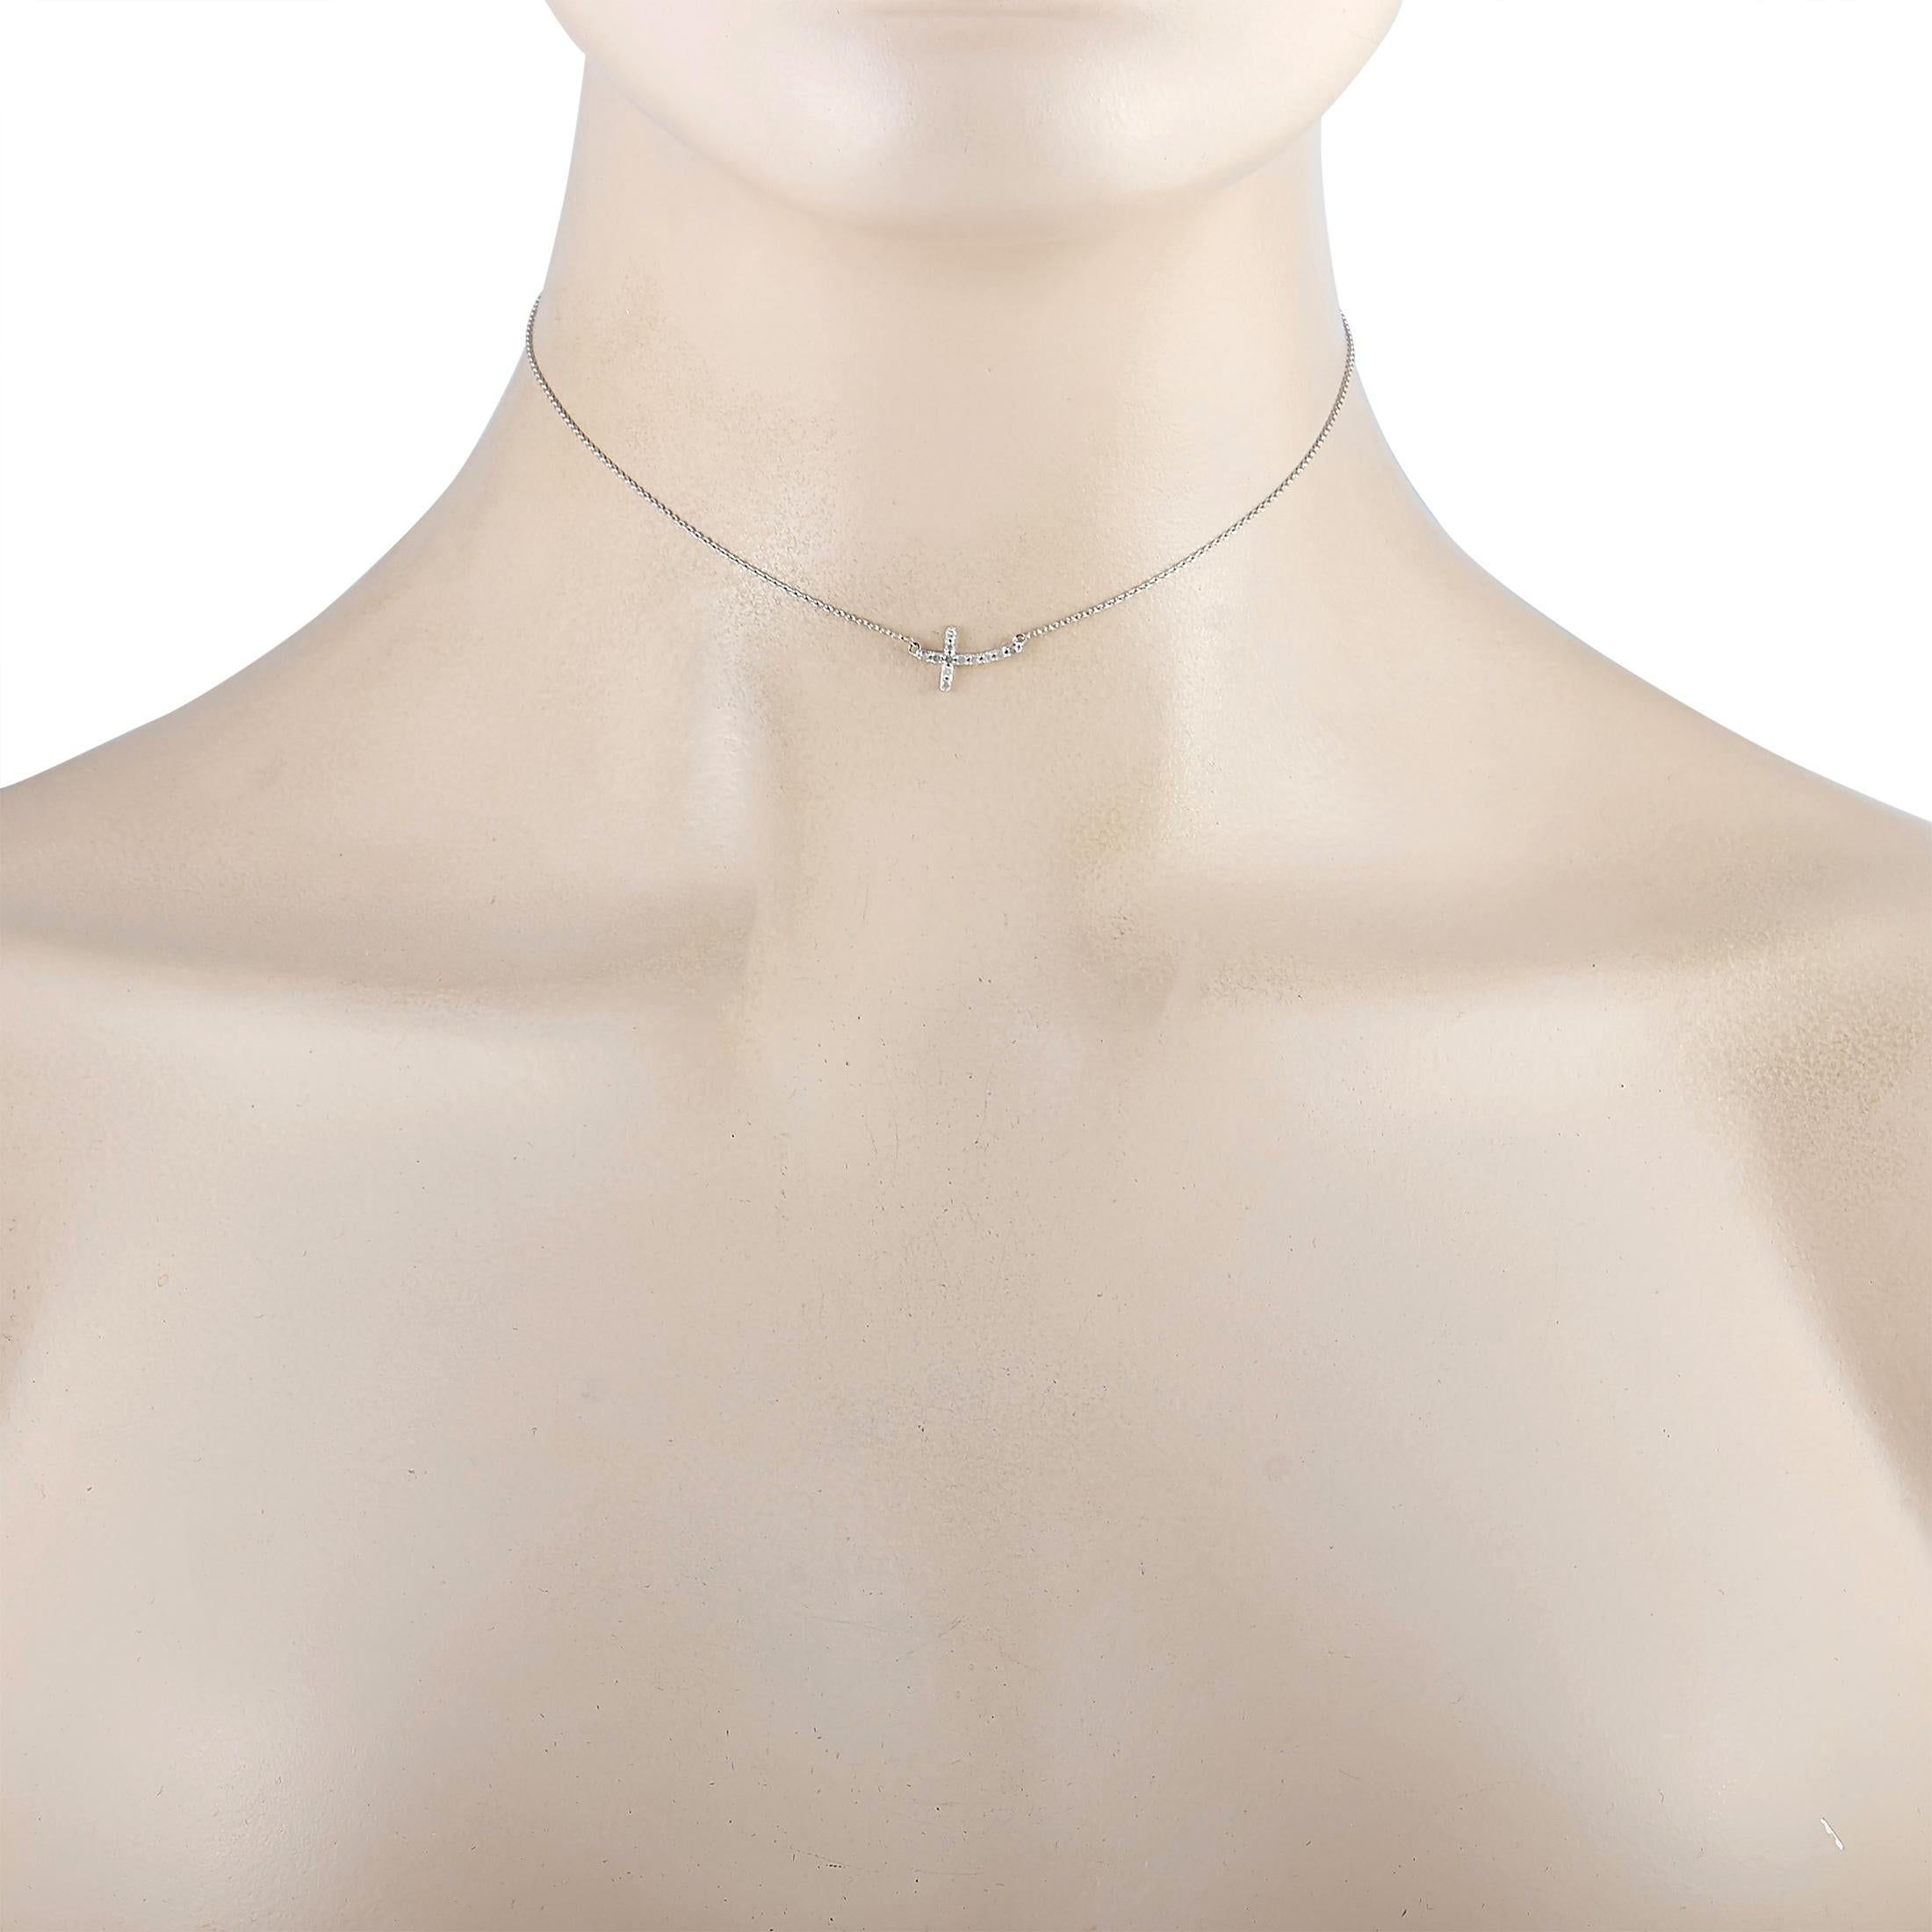 Diese LB Exclusive-Halskette ist aus 14-karätigem Weißgold gefertigt und mit Diamanten von 0,12 Karat verziert. Die Halskette wiegt 0,6 Gramm und wird mit einer 13-Zoll-Kette und einem Kreuz-Anhänger präsentiert, der 0,50 Zoll lang und 0,37 Zoll